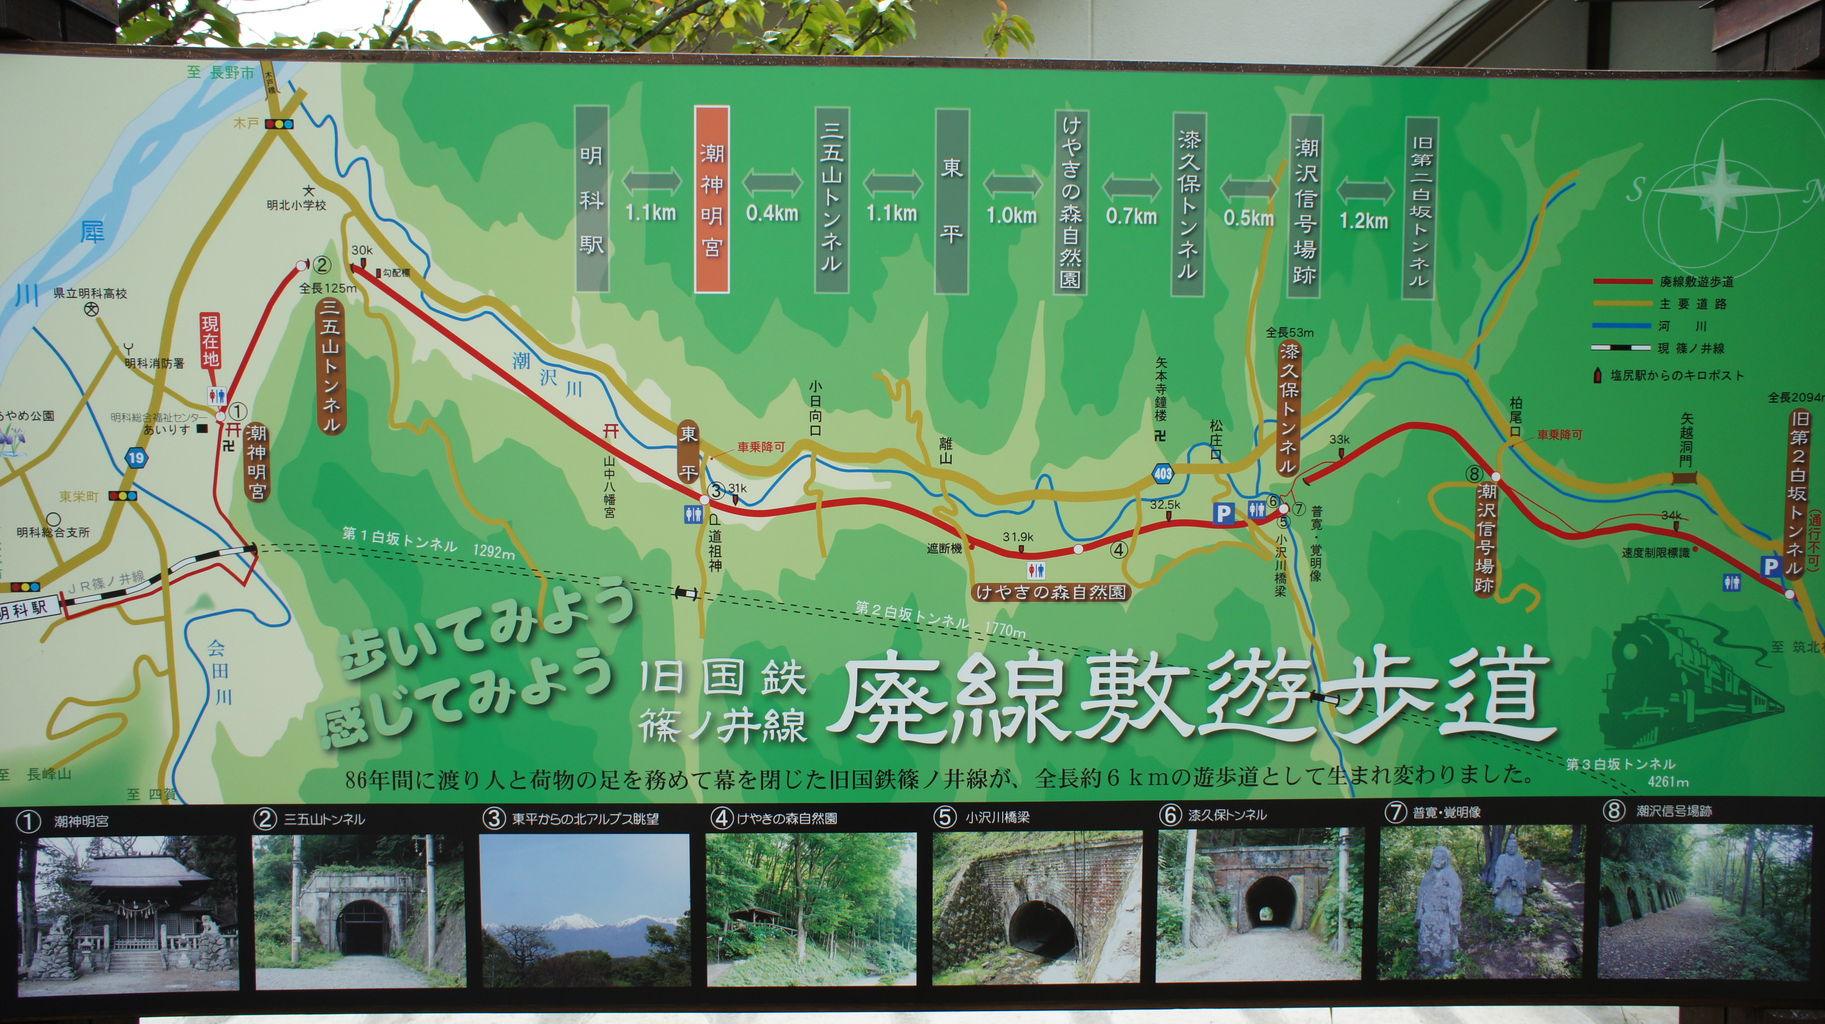 「篠ノ井線 ウォーキングコース」の画像検索結果